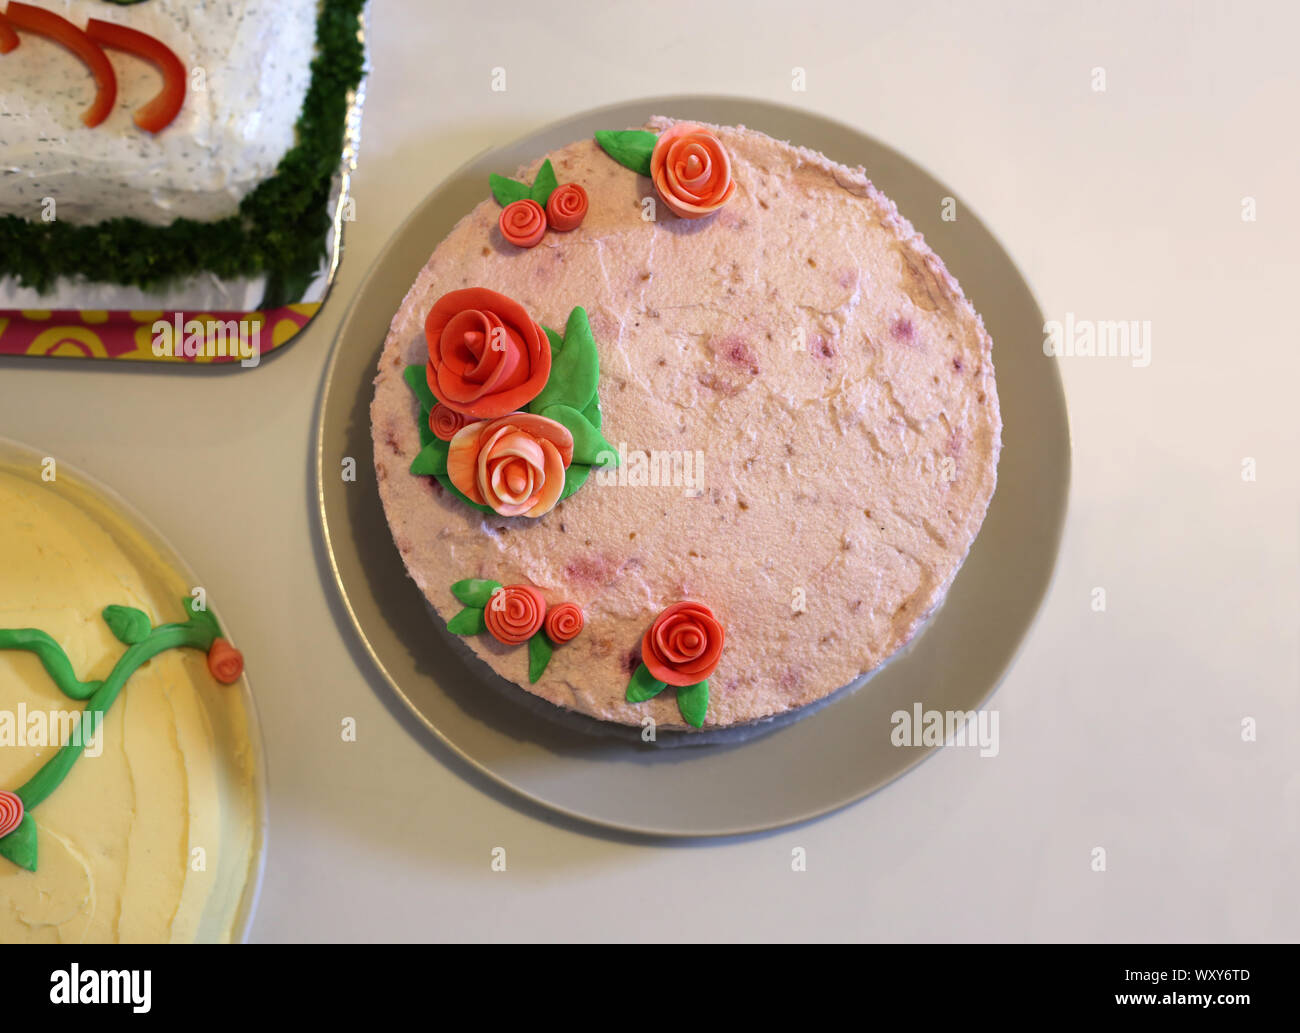 Mehrere Kuchen auf dem Tisch. Es ist die Heimat pink berry Kuchen mit Rosen und anderen Kuchen. Lecker Bankett Tabelle, nicht lassen niemanden hungrig! Stockfoto